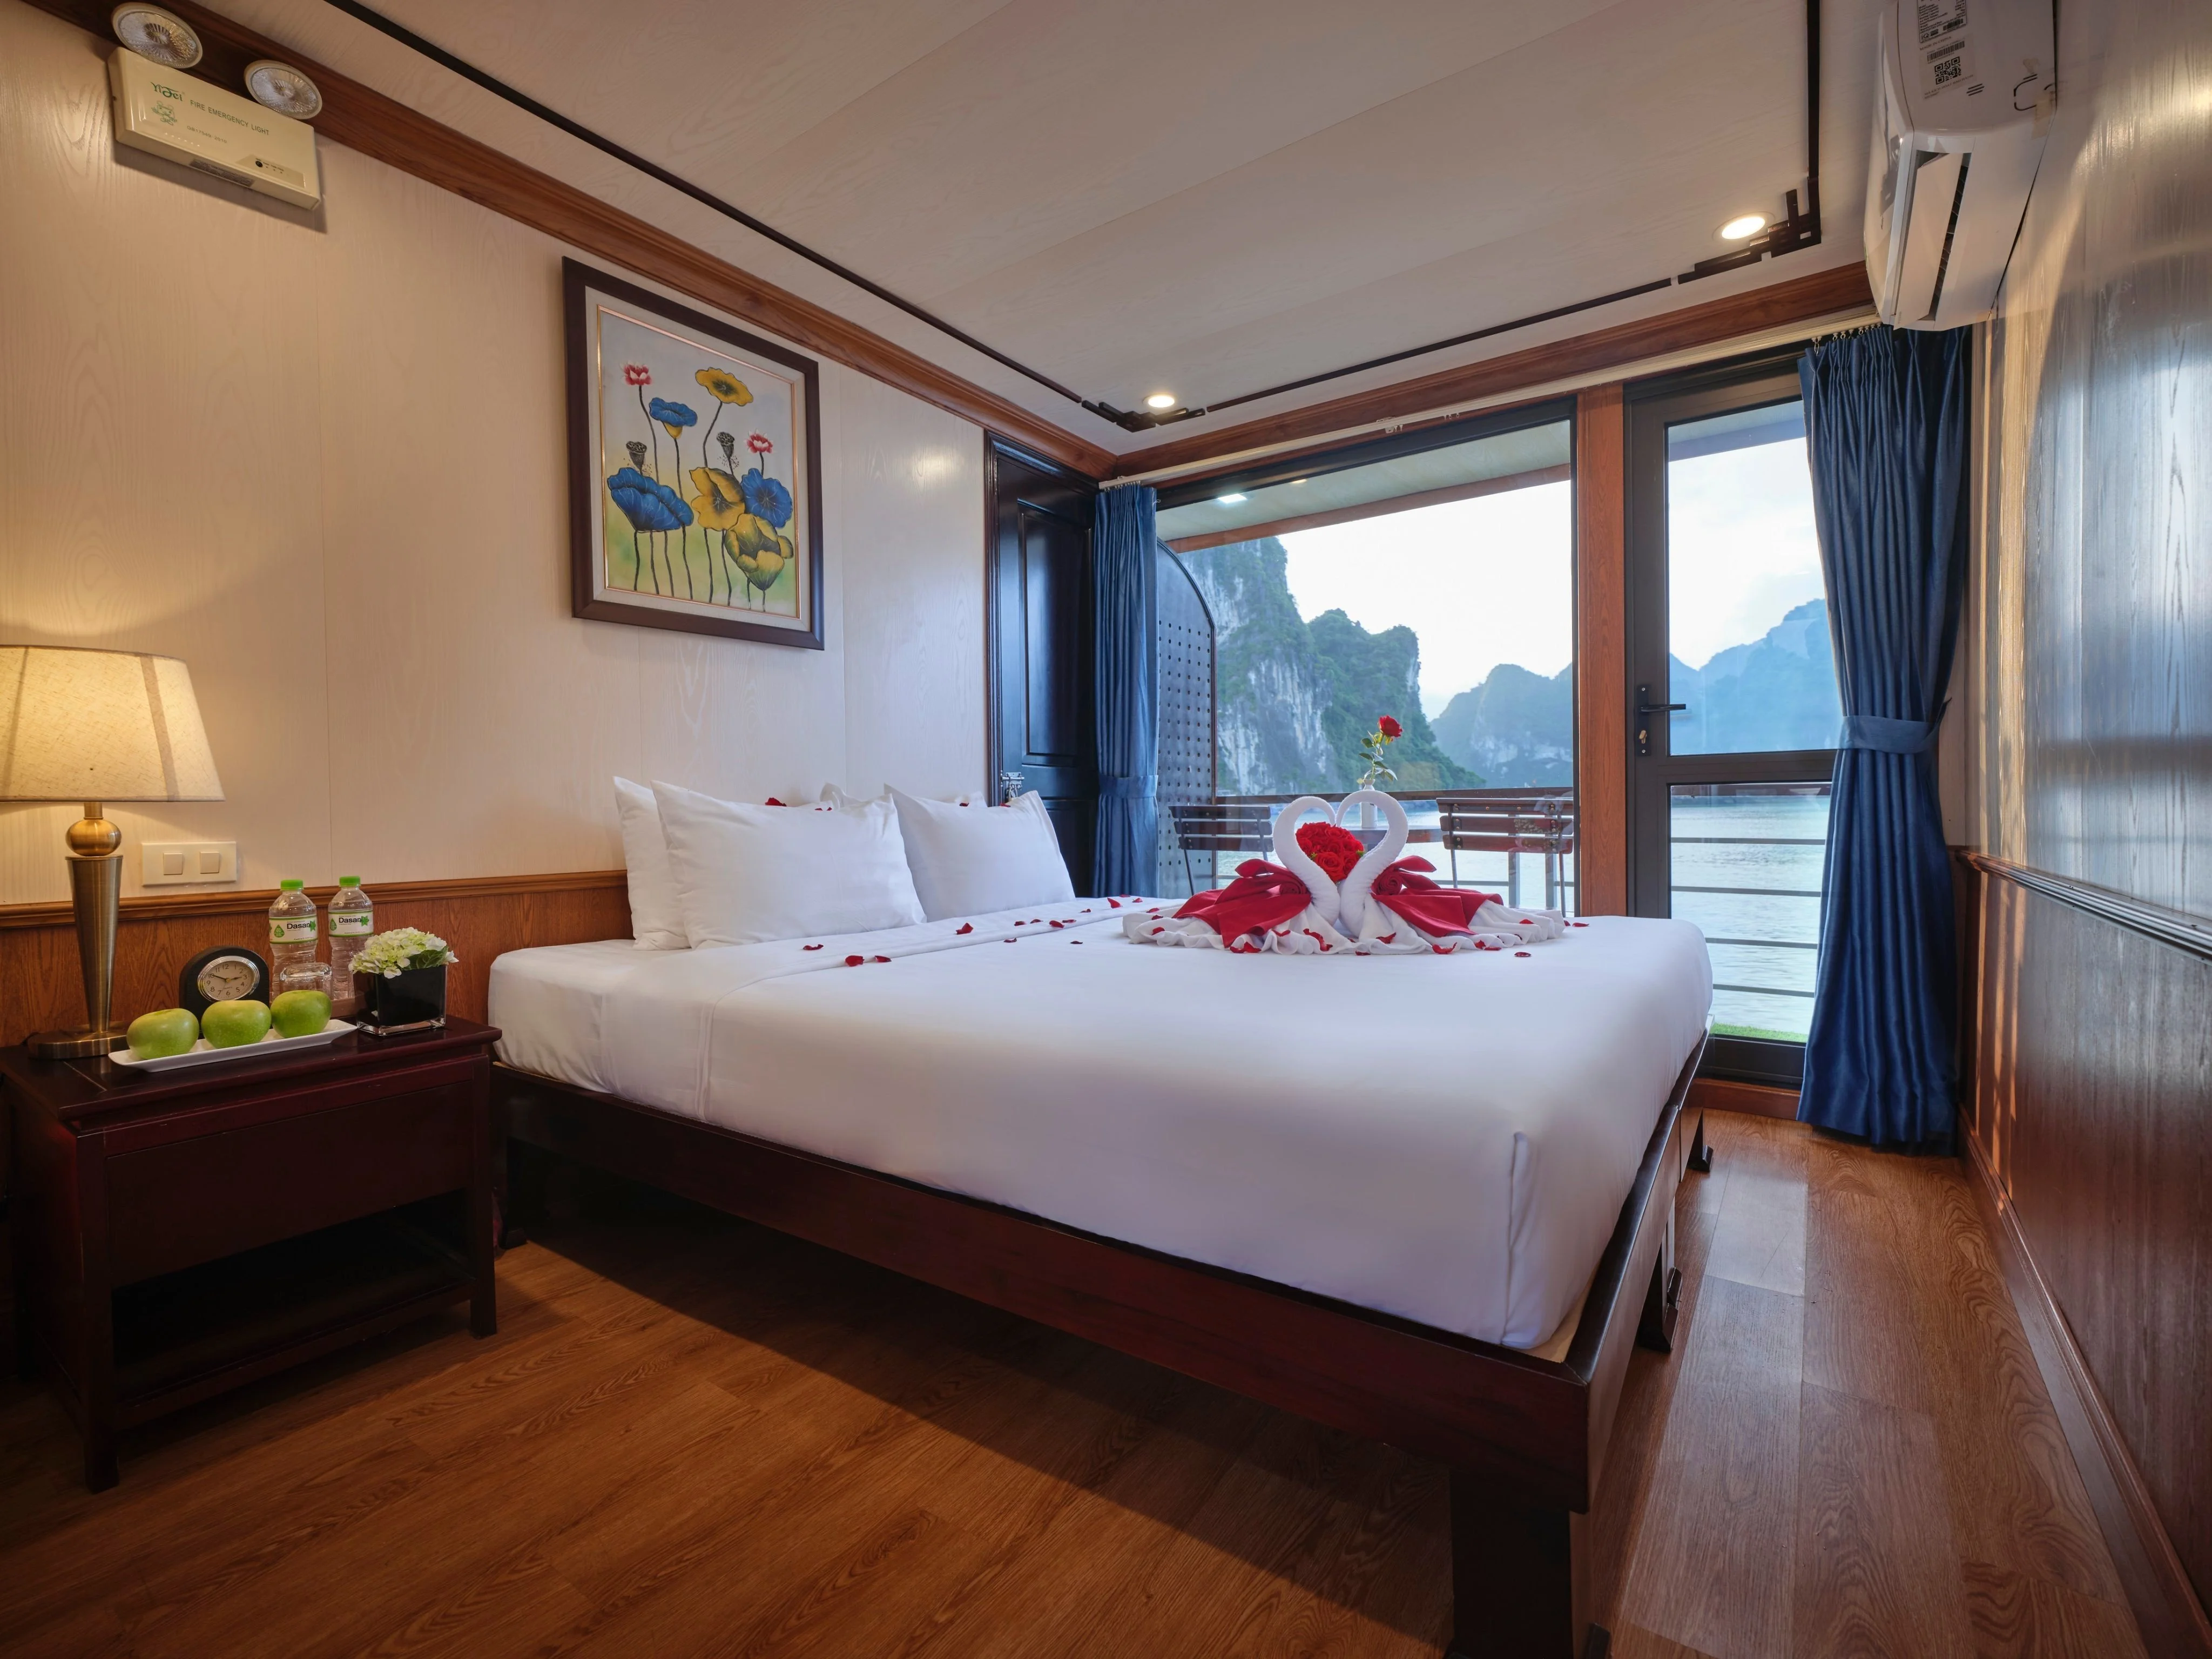 Tour Du lịch Hạ Long 03 ngày 02 đêm - ngủ tàu Lavender Cruise